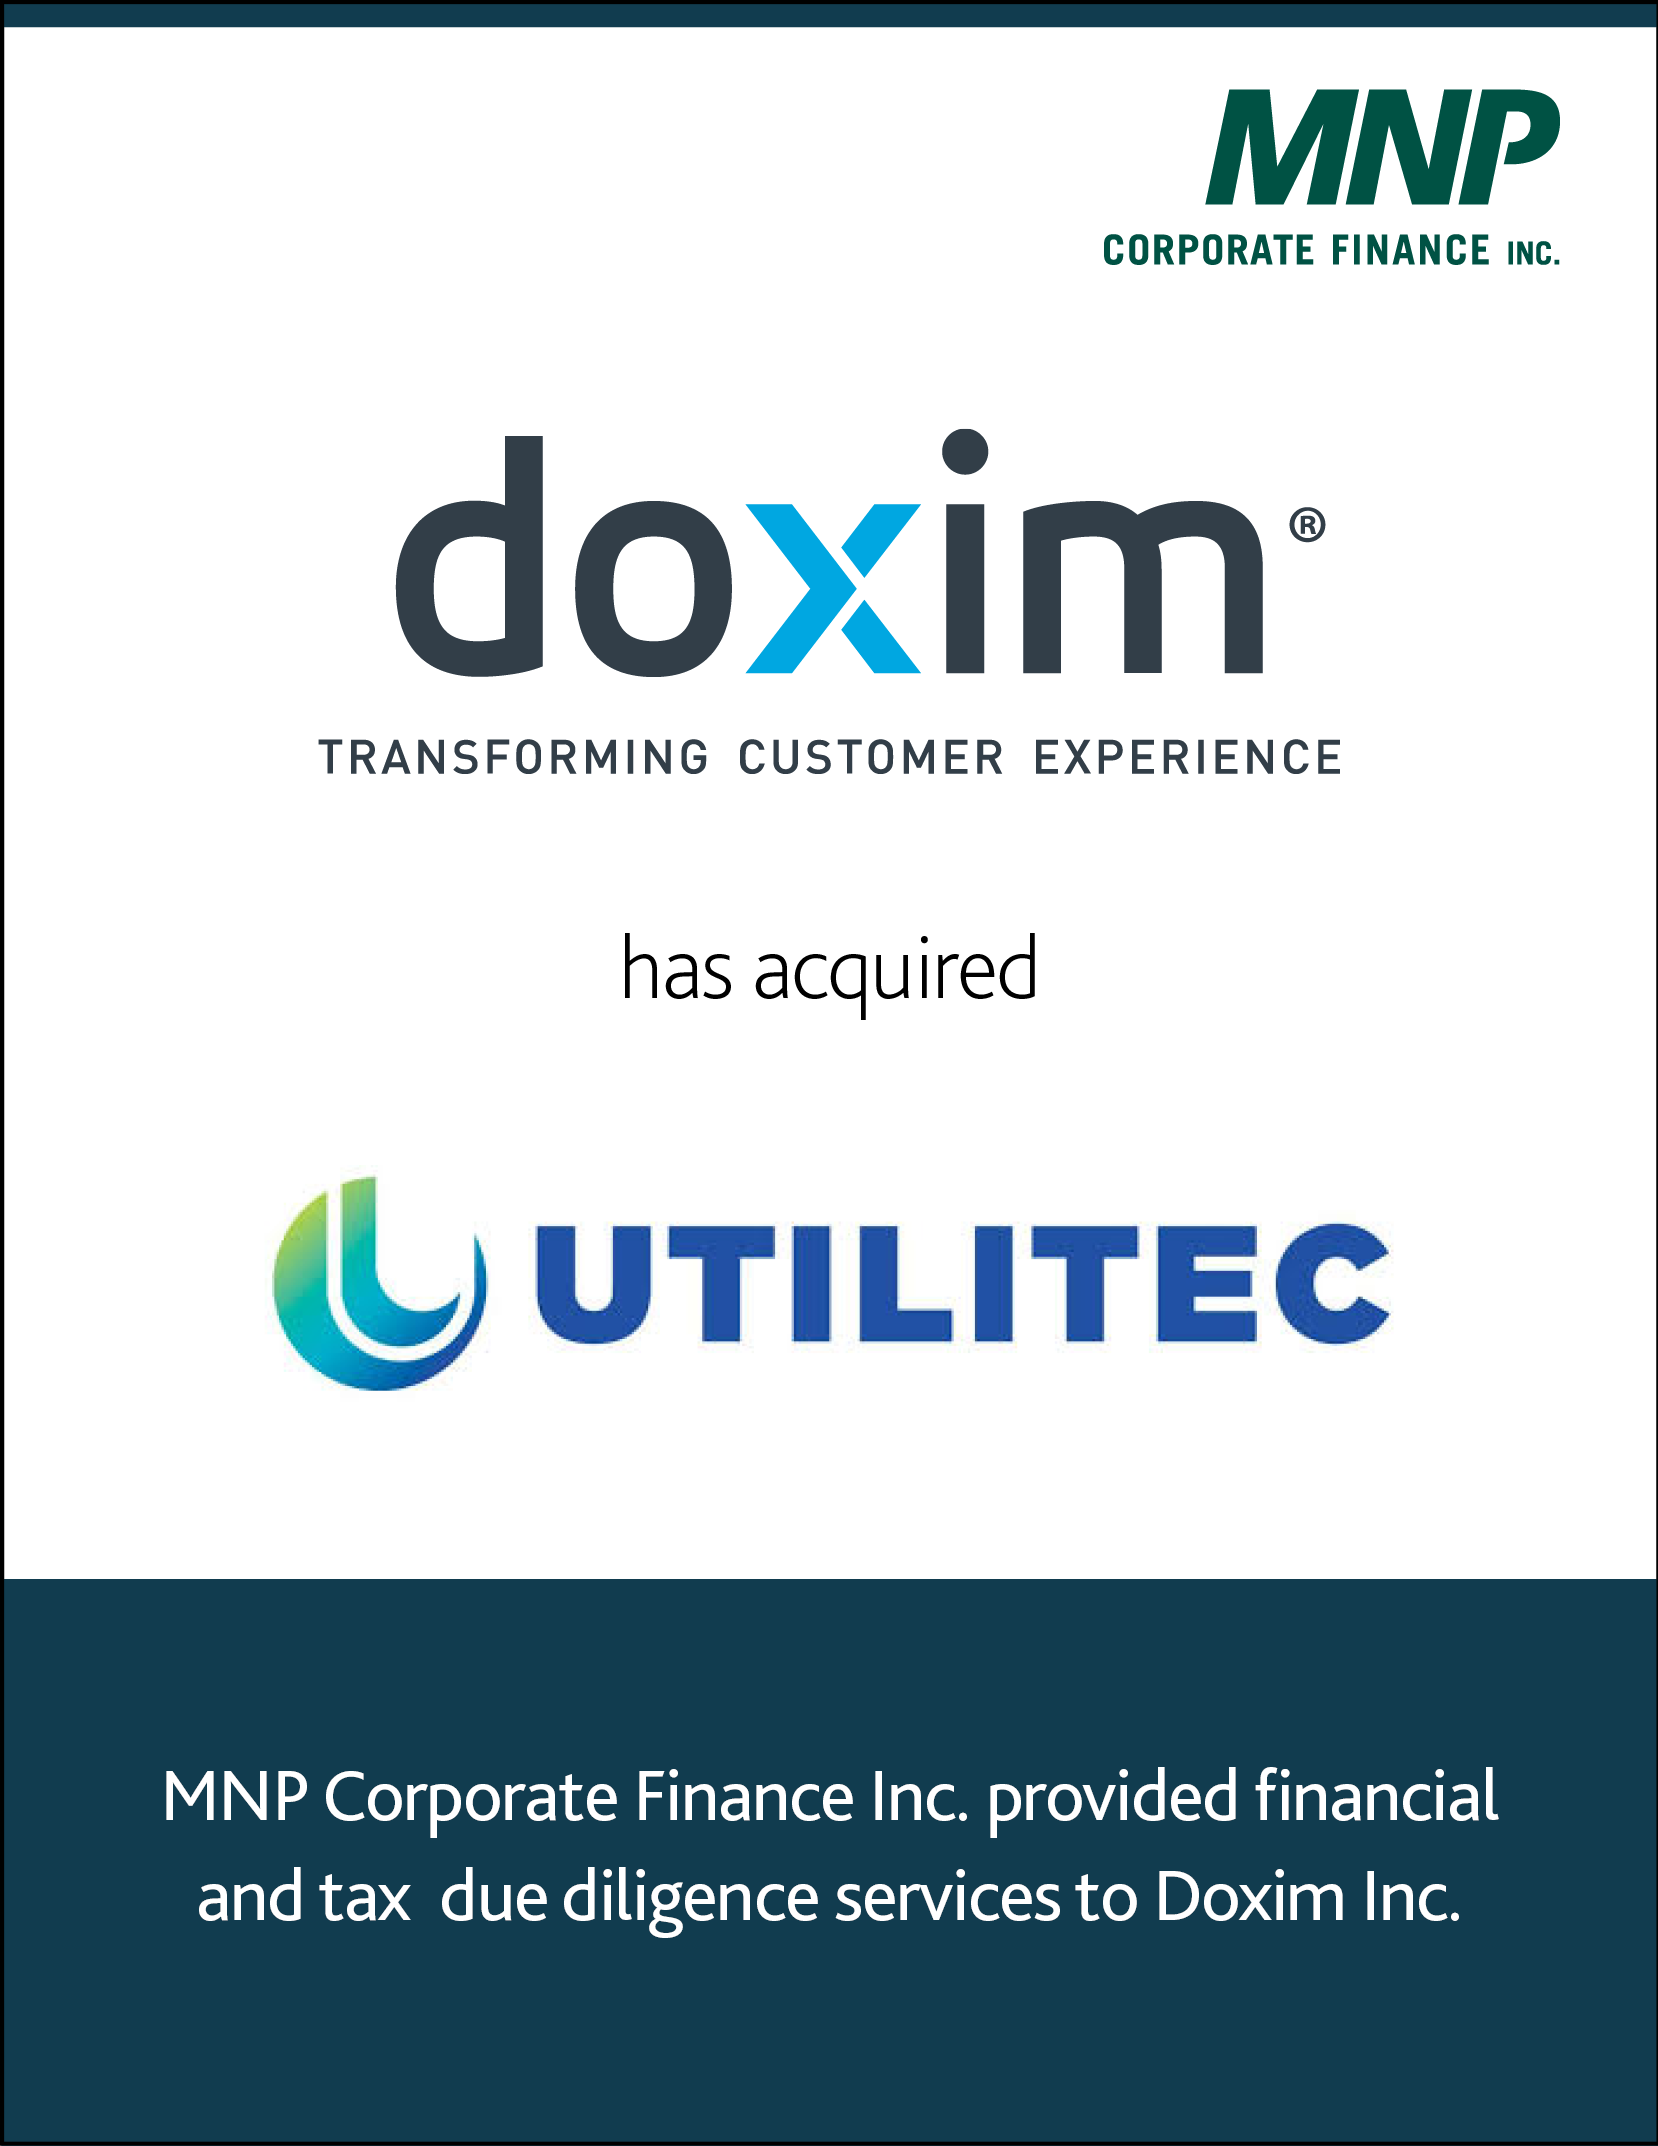 Doxim Inc. has acquired Utilitec.